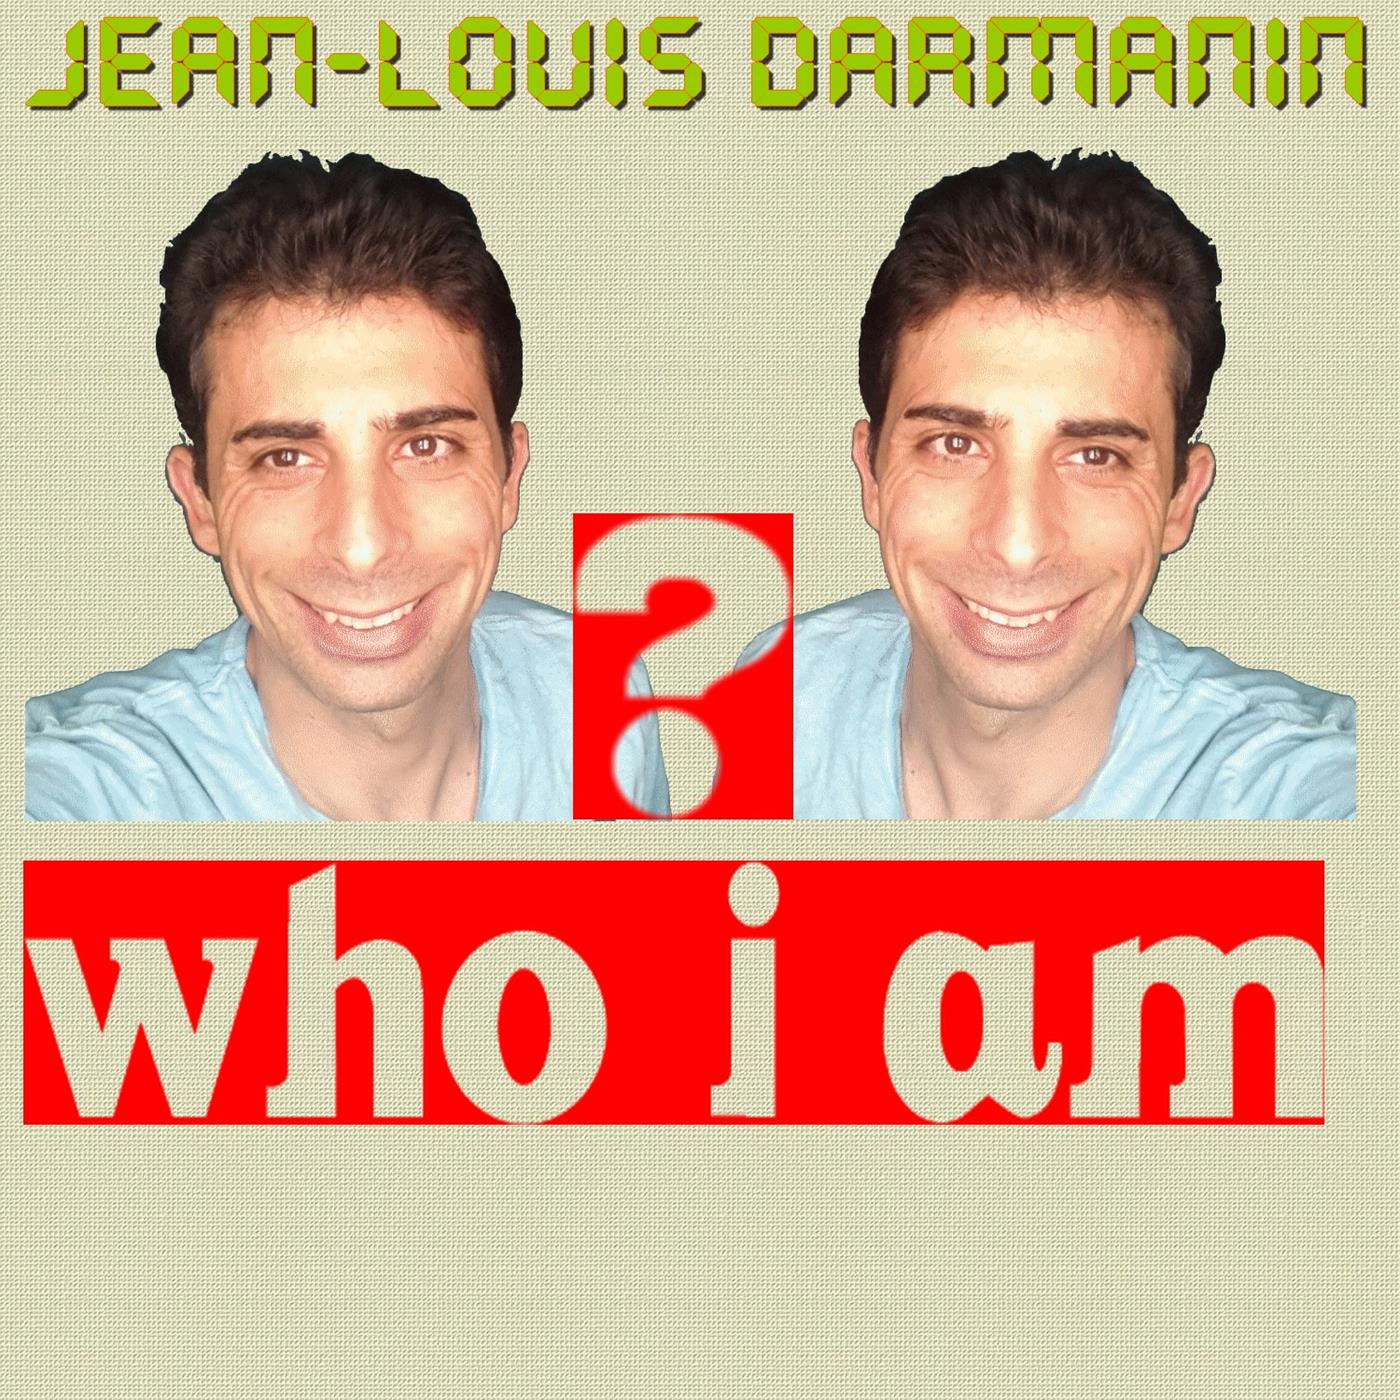 Who I Am?